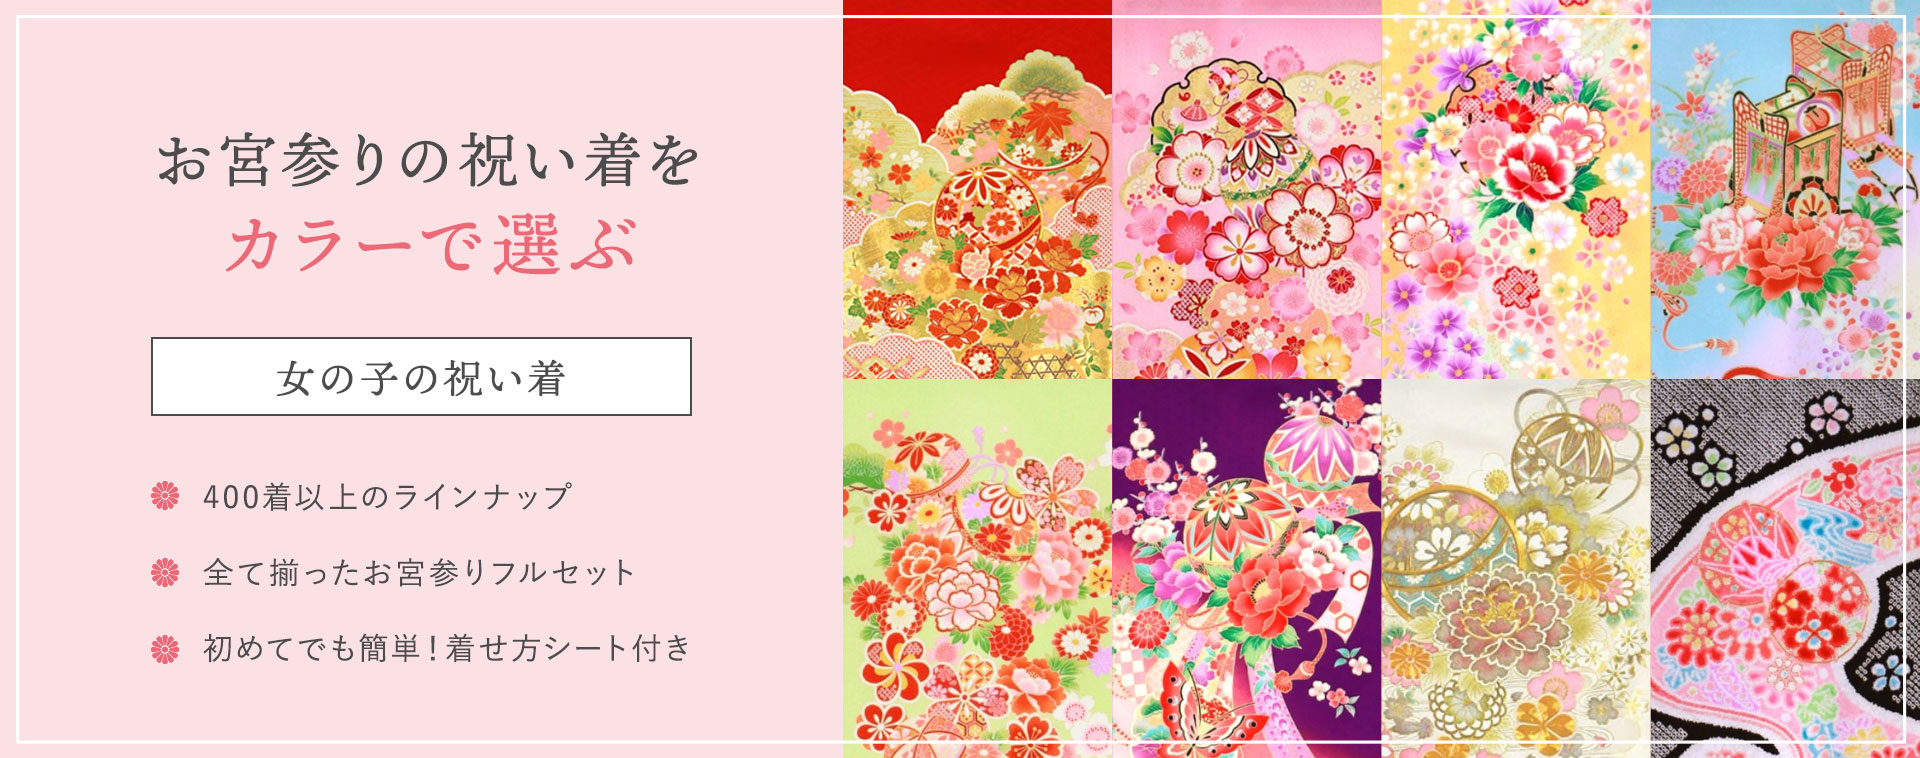 お宮参りの祝い着をカラーで選ぶ【女児】 | 京都かしきもの